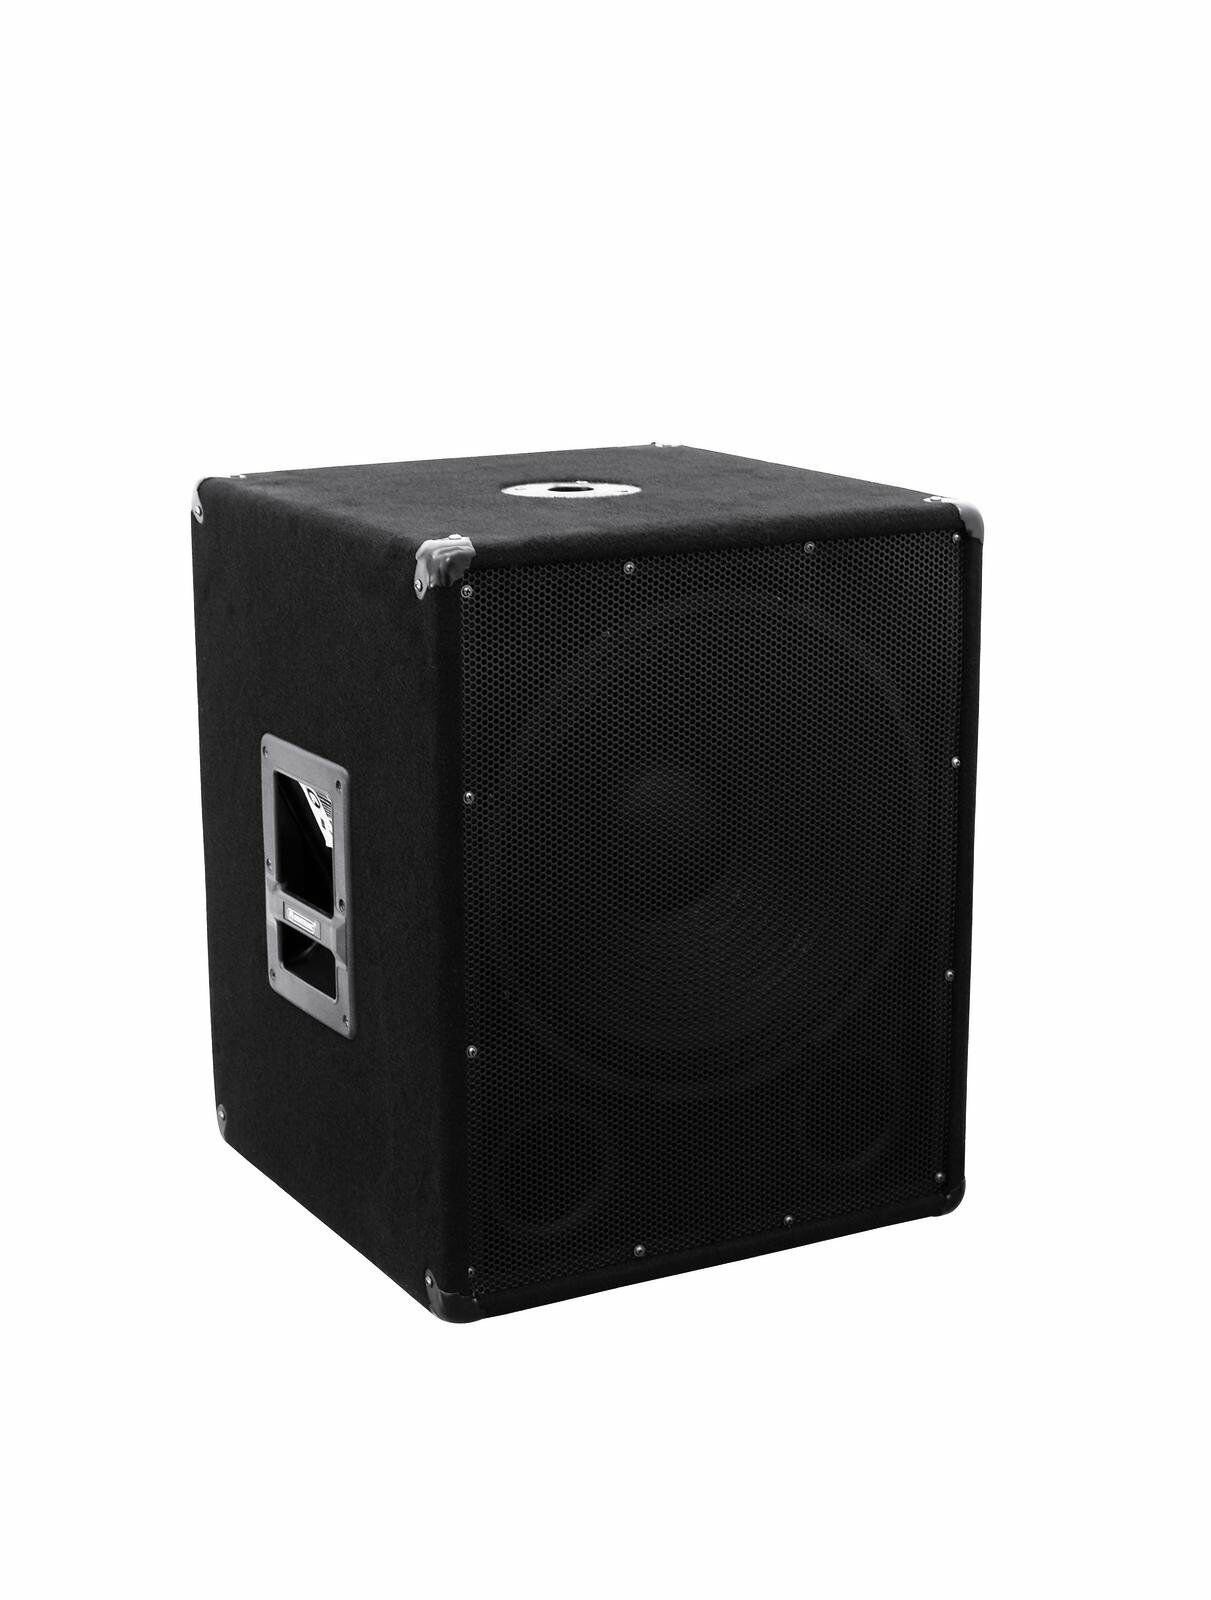 DSX DJ Set Verstärker Subwoofer W) Licht LED Nebel (980 Party-Lautsprecher Mixer Boxen Anlage